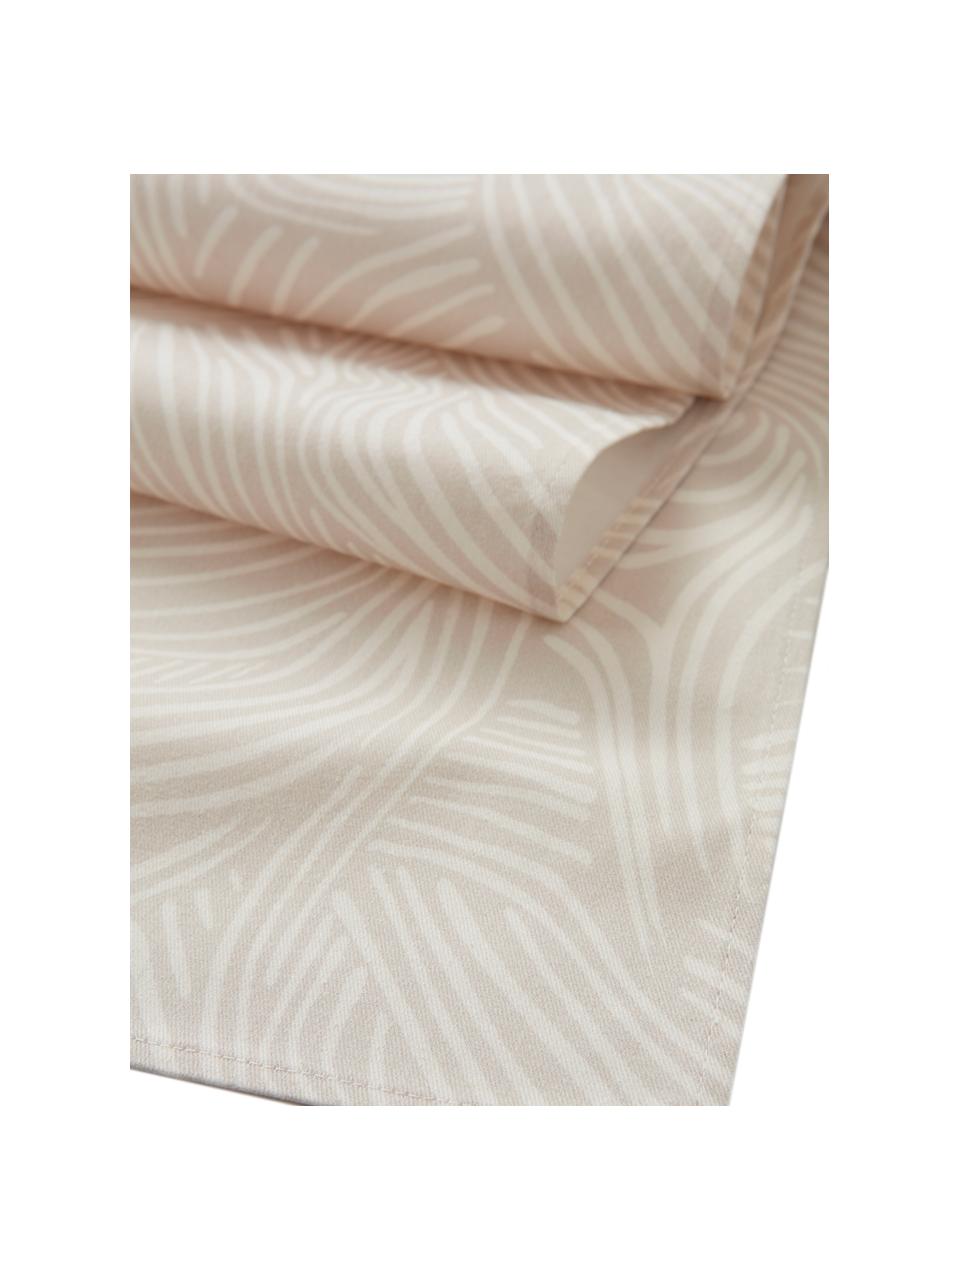 Katoenen tafelloper Vida in beige met fijne lijnen, 100% katoen, Beige, 40 x 140 cm